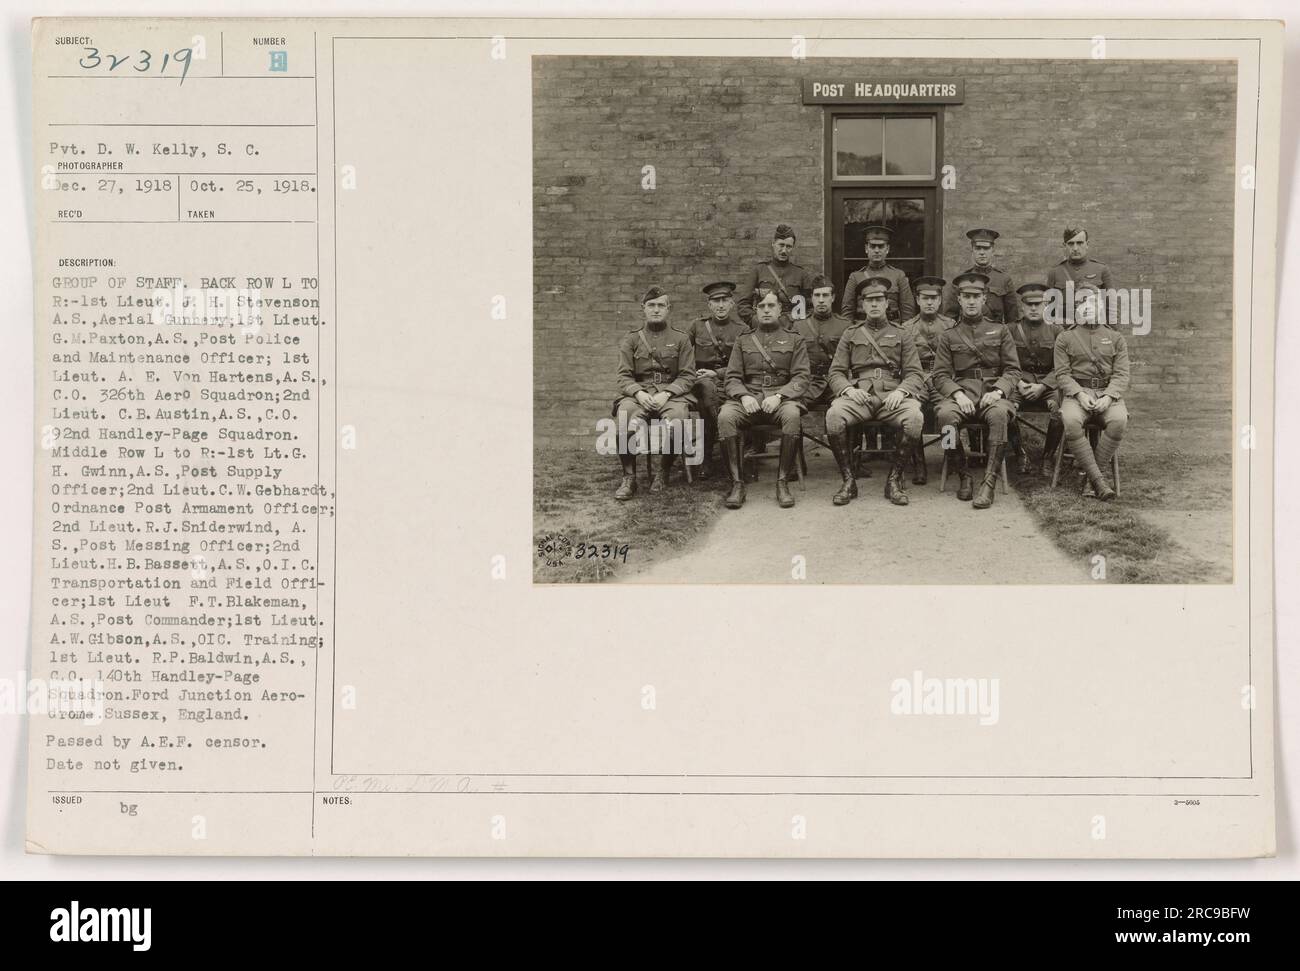 Pvt. D. W. Kelly hat dieses Foto am 27. Dezember 1918 auf dem Ford Junction Aerodrome in Sussex, England, gemacht. Das Bild zeigt eine Gruppe von Mitarbeitern aus verschiedenen Einheiten während des Ersten Weltkriegs Zu den Personen in der hinteren Reihe gehören 1. Lieut. J. H. Stevenson, 1. Lieut. G.M. Paxton, 1. Lieut. A.E. Von Hartens und 2. Lieut. C.B. Austin. In der mittleren Reihe sehen wir 1. LT. G.H. Gwinn, 2. Lieut. C.W. Gebhardt, 2. Lieut. R.J. Sniderwind, 2. Lieut. H.B. Bassett, 1. Lieut. F.T. Blakeman, 1. Lieut. A. W.. Gibson und 1. Lieut. R.P. Baldwin. Das Datum des Fotos ist nicht angegeben. AUSGESTELLT durch DIE POST Stockfoto